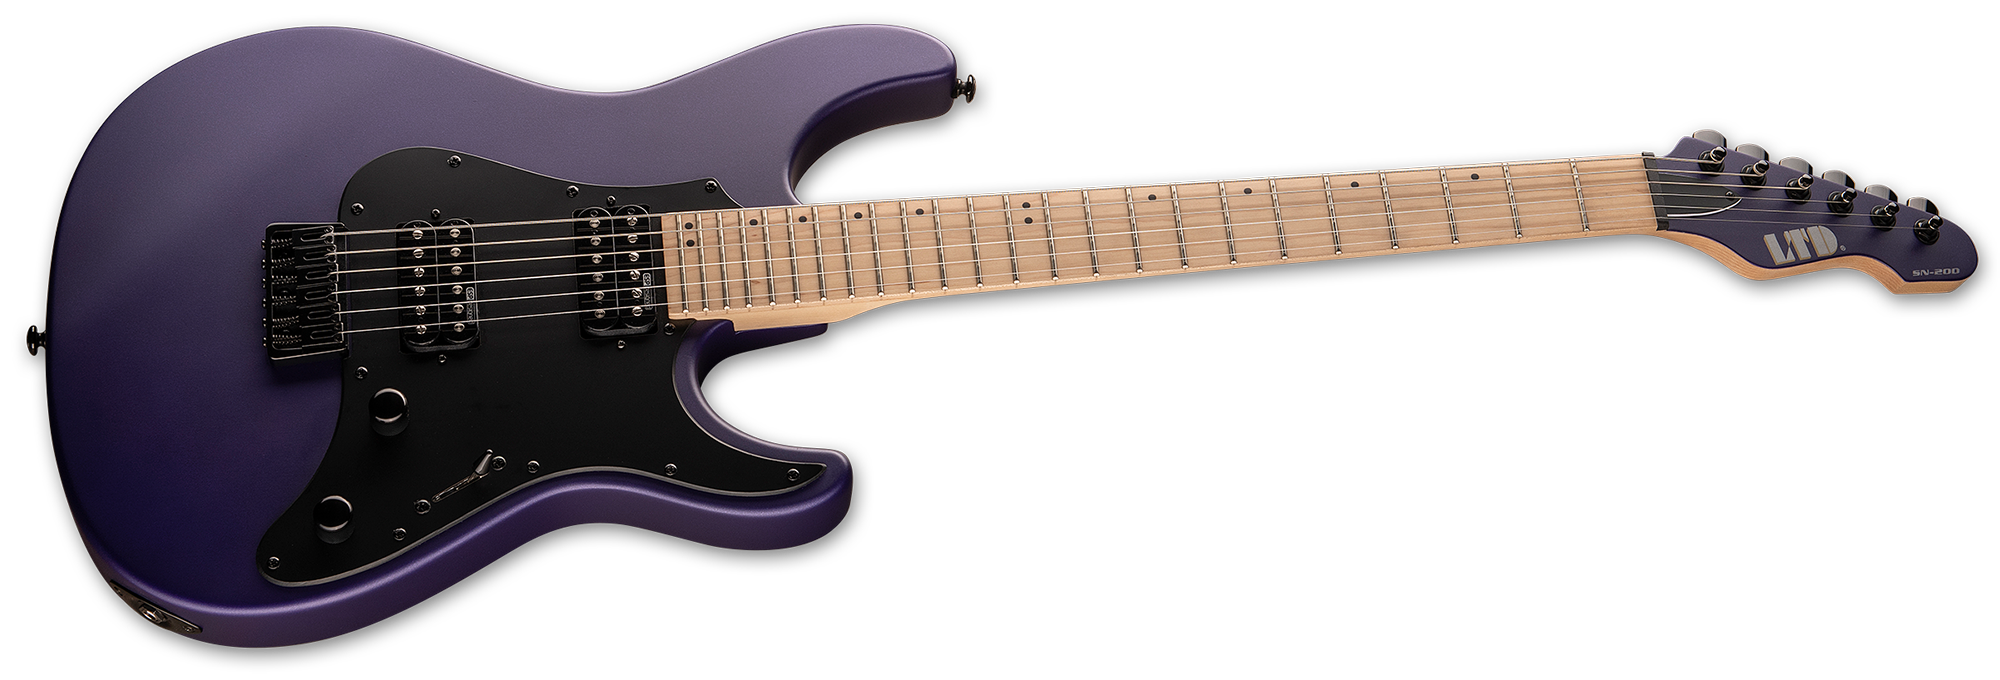 ESP LTD SN-200HT - Dark Metallic Purple Satin